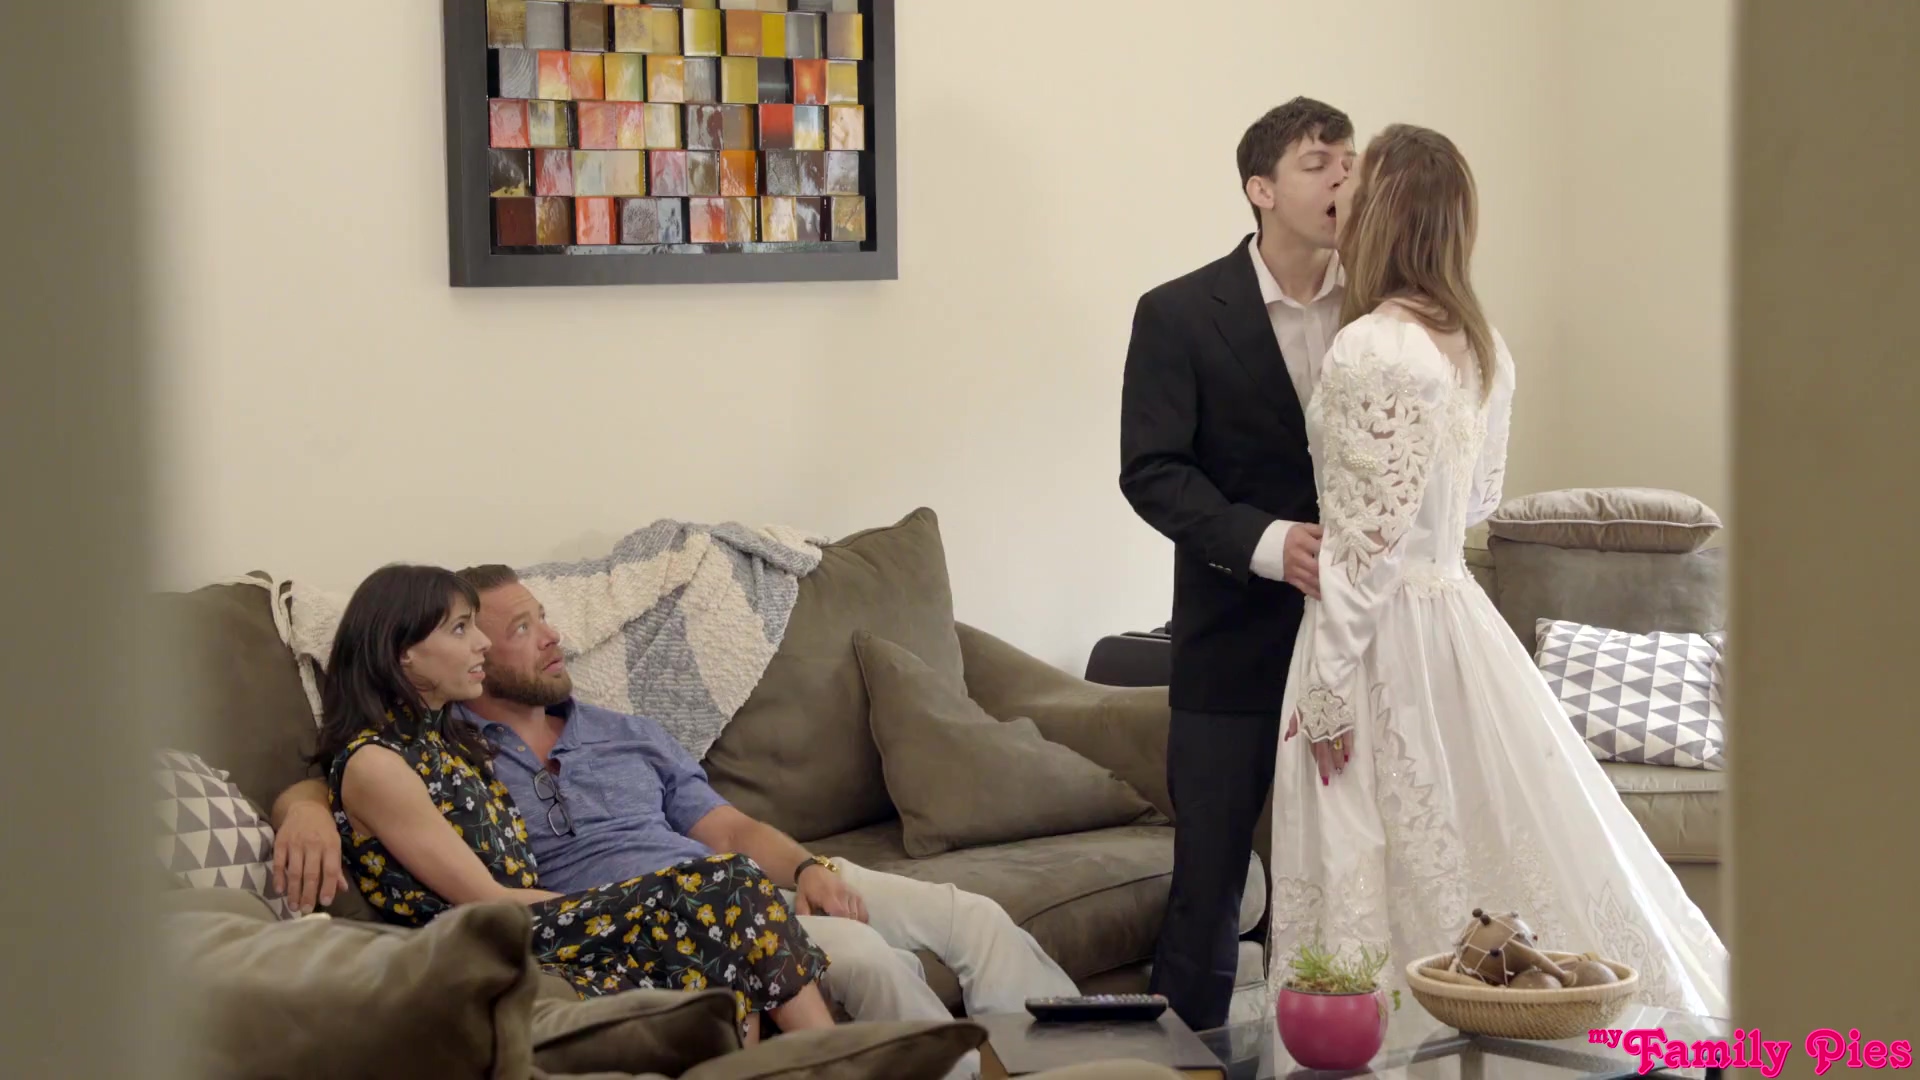 Wedding Room Voyeur - Voyeur step-parents are shocked watching teen sex